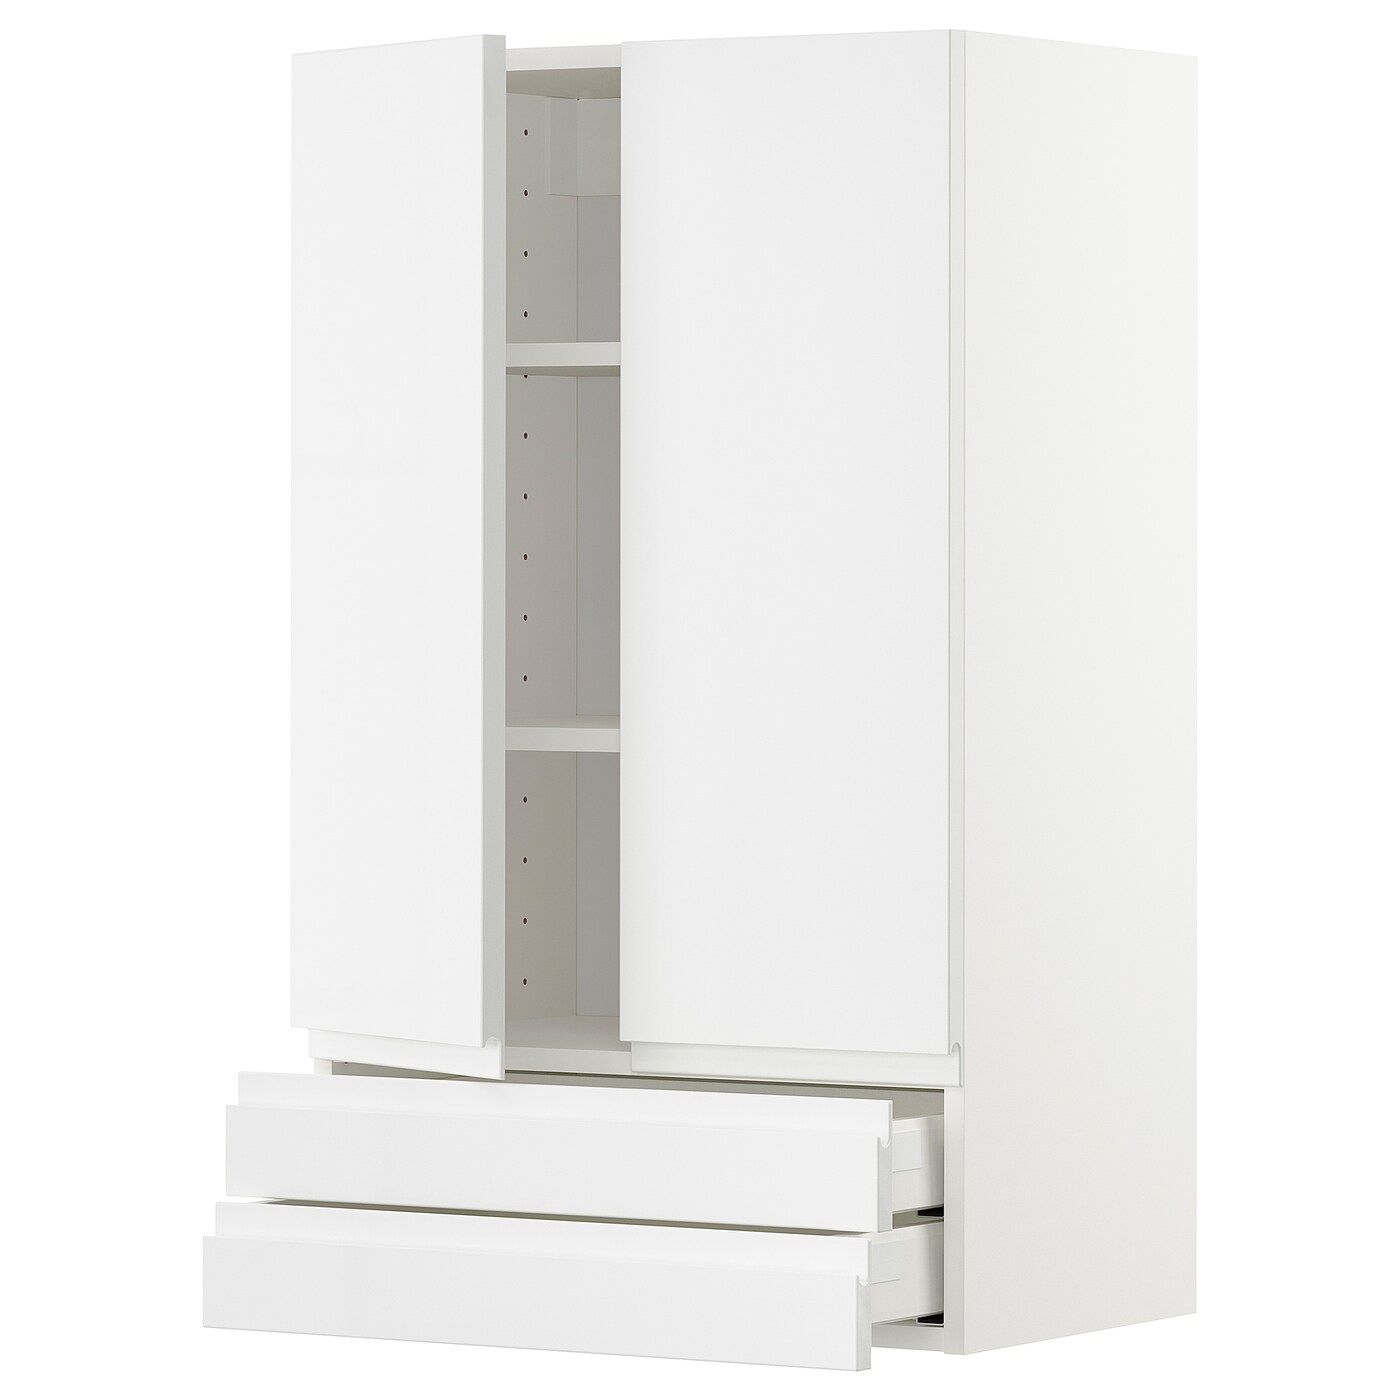 Навесной шкаф с полкой - METOD/MAXIMERA  IKEA/ МЕТОД /МАКСИМЕРА ИКЕА, 100х60 см, белый